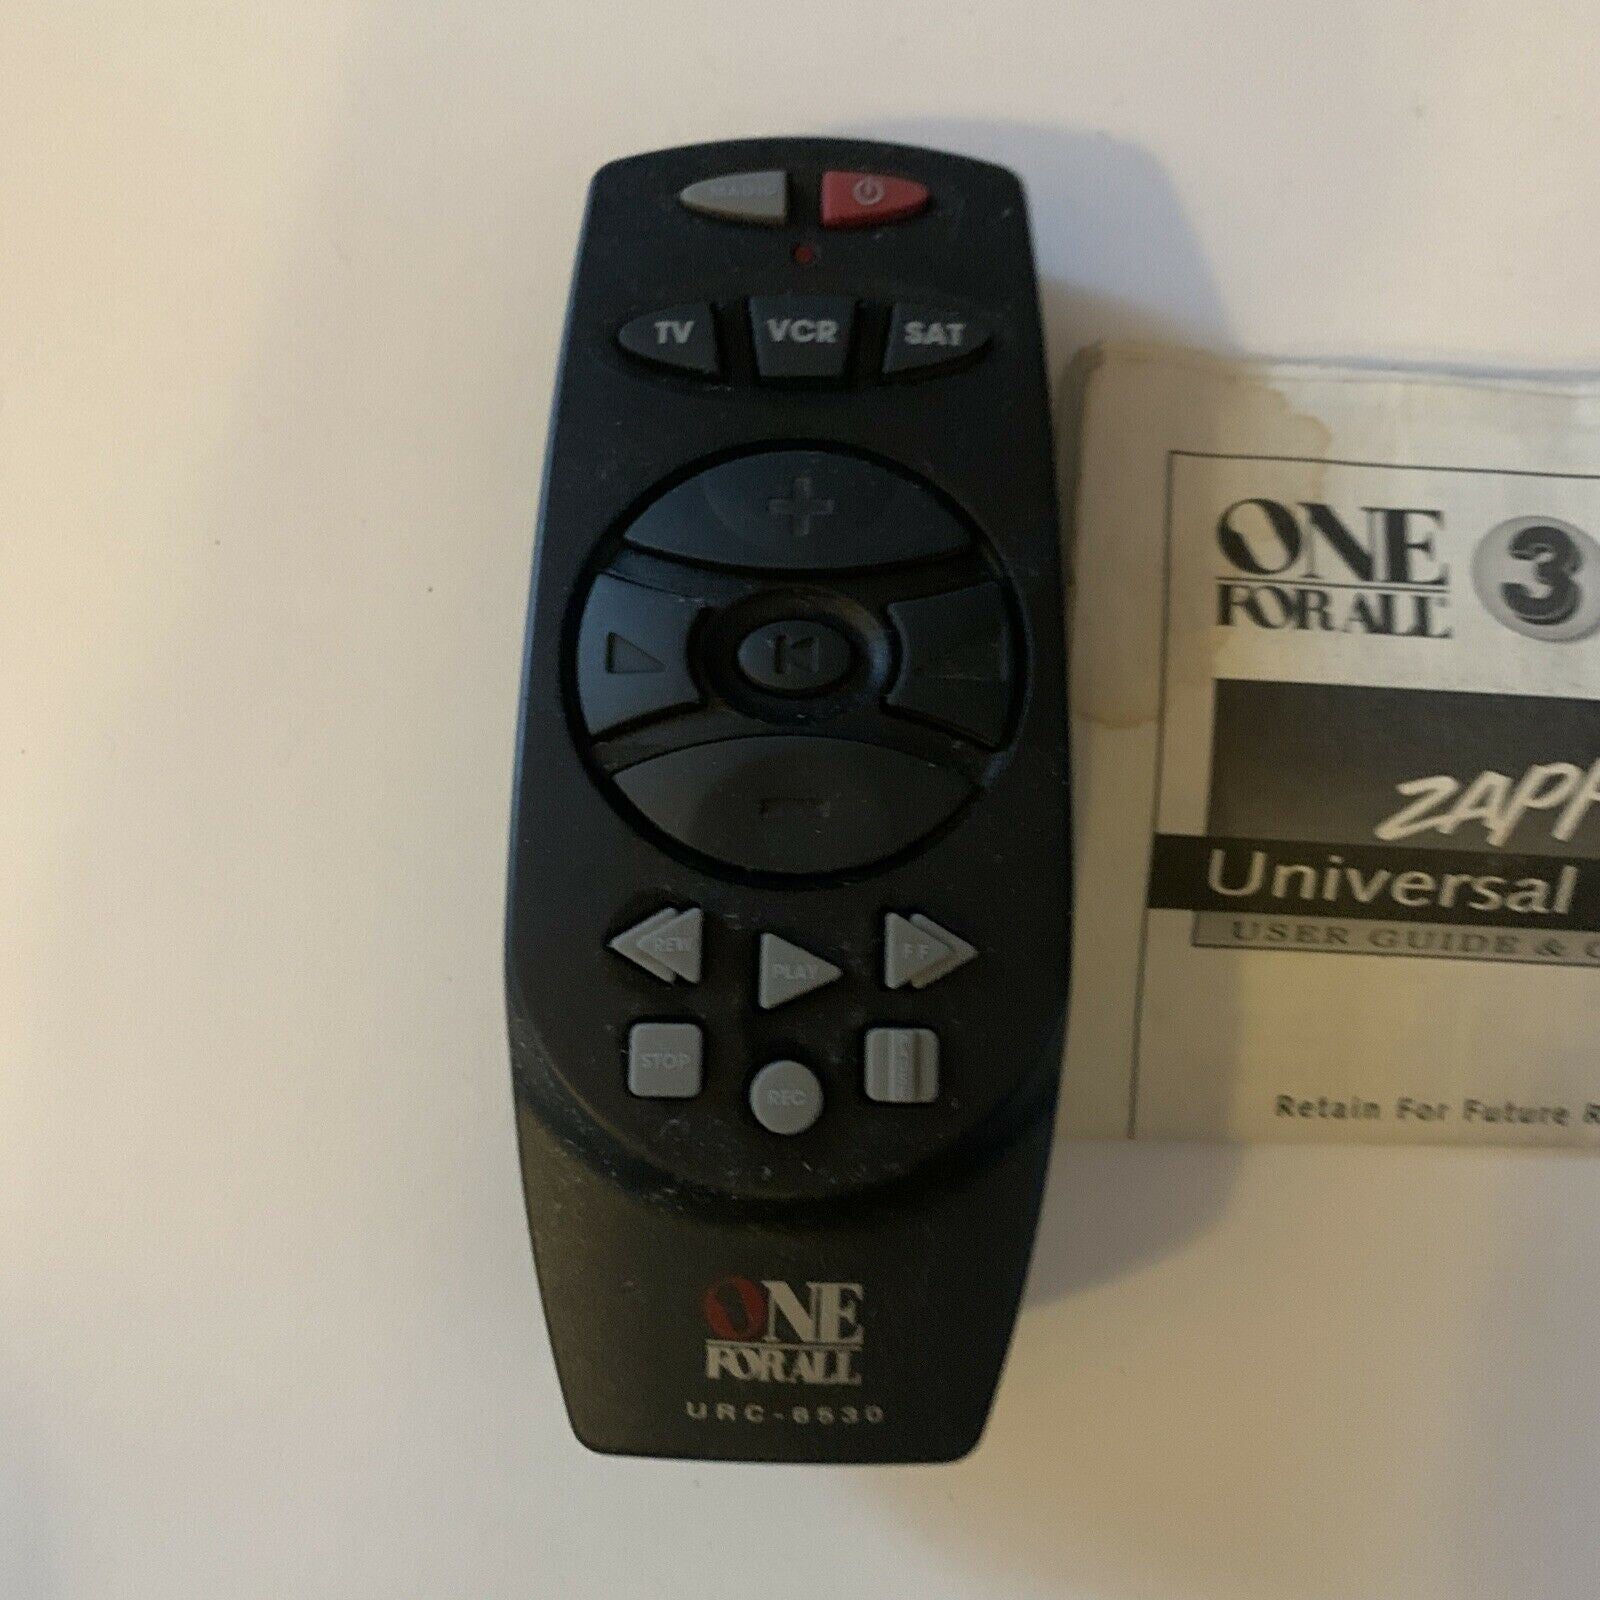 One For All Zapper Universal Remote Control 3 in 1 URC-6530 TV VCR – Retro  Unit